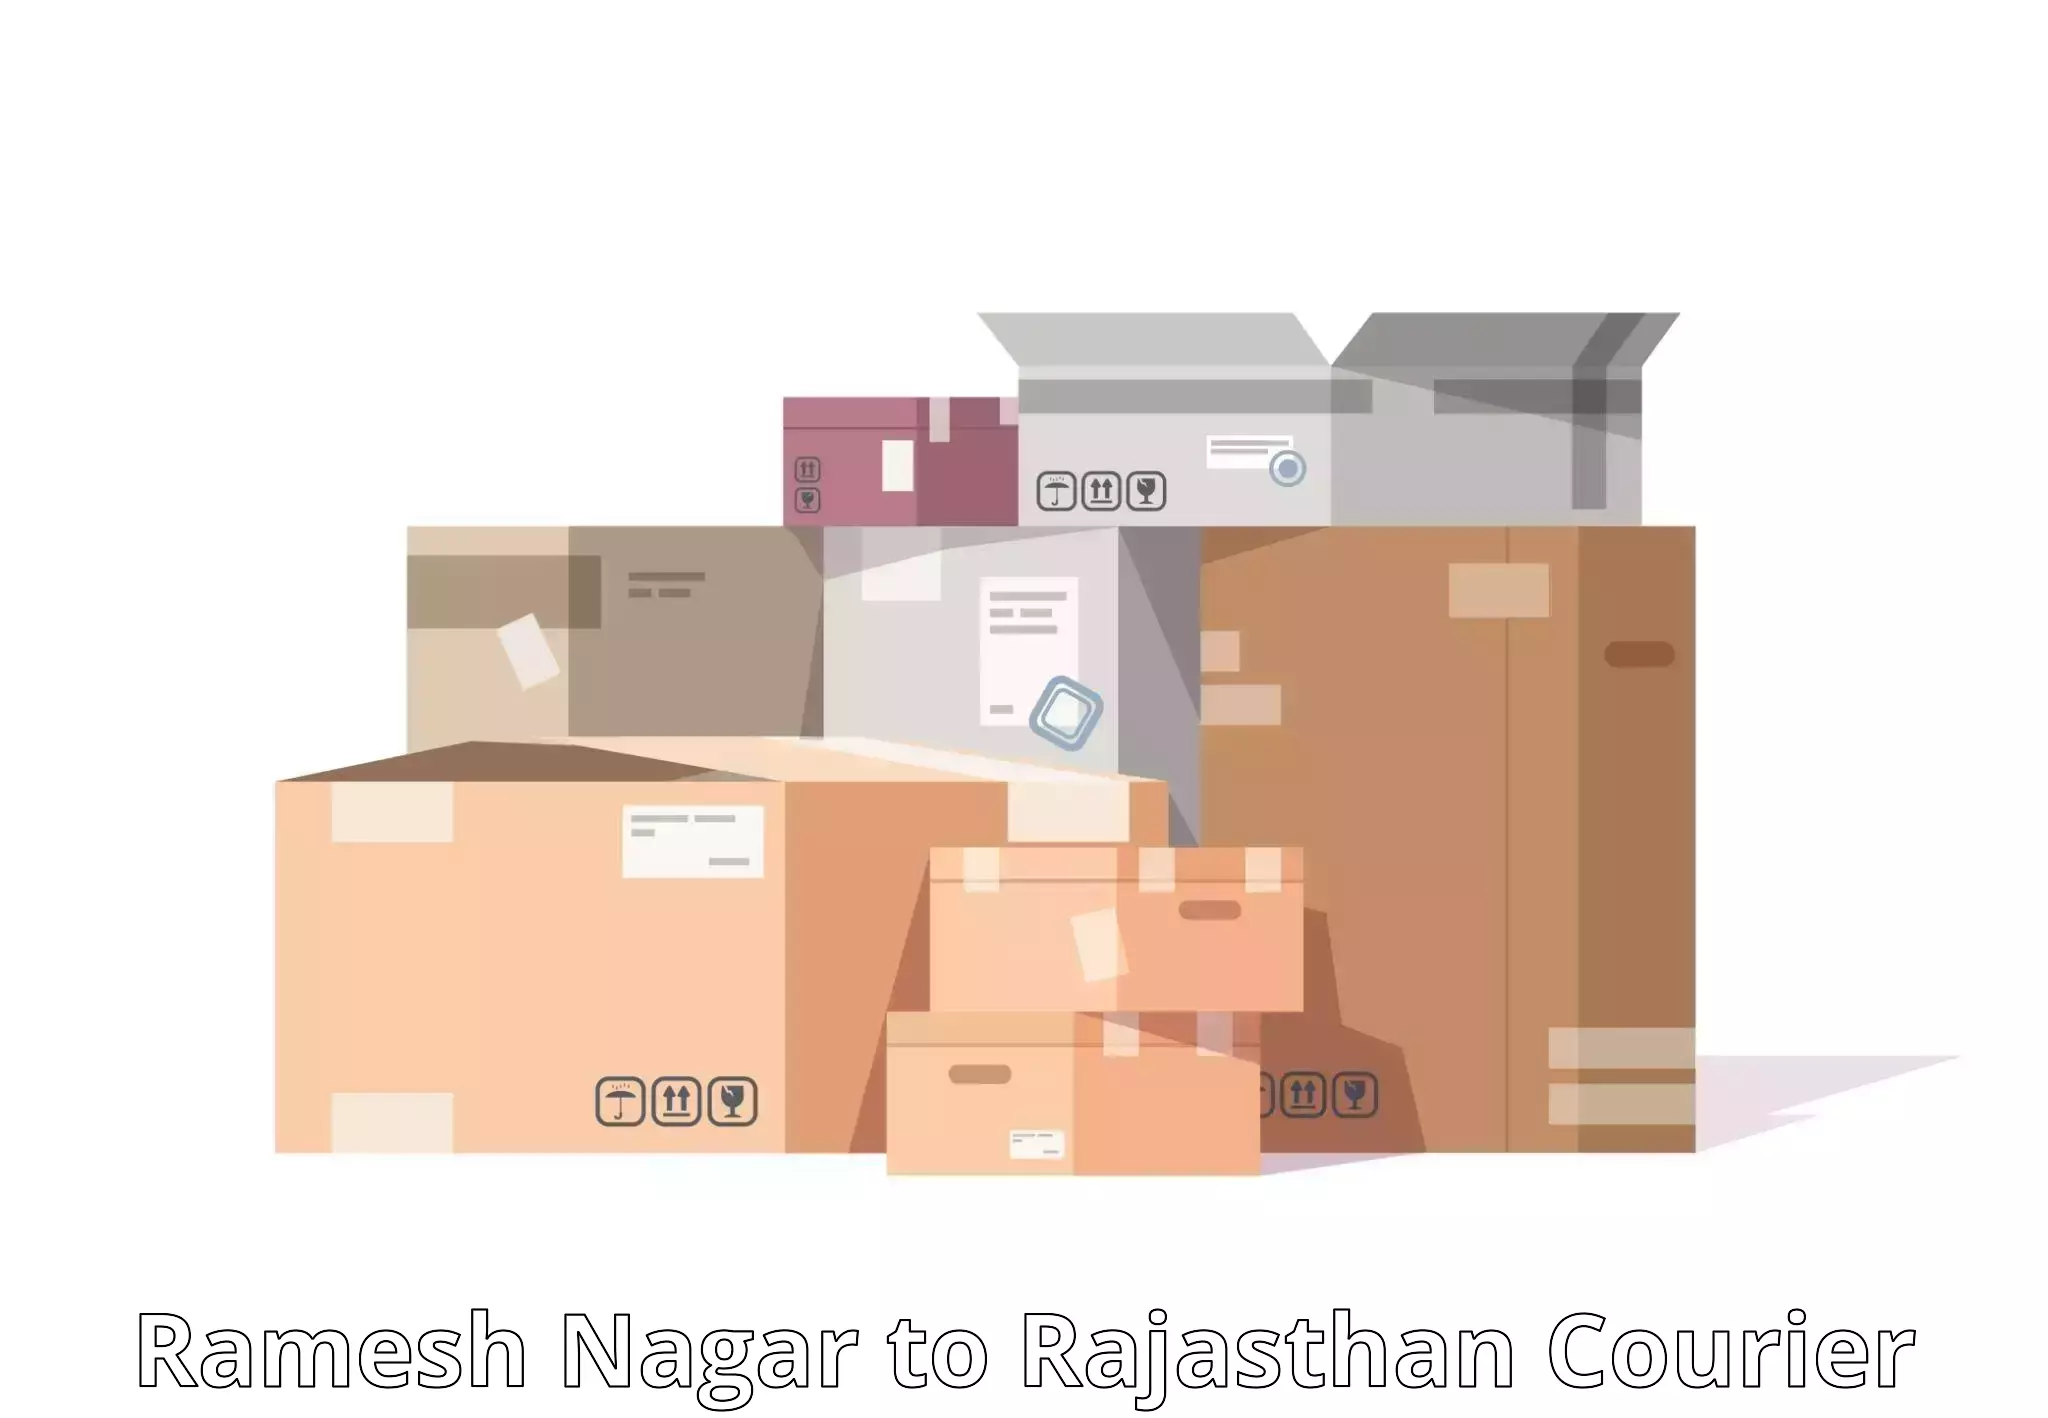 Efficient parcel transport Ramesh Nagar to Jawahar Nagar